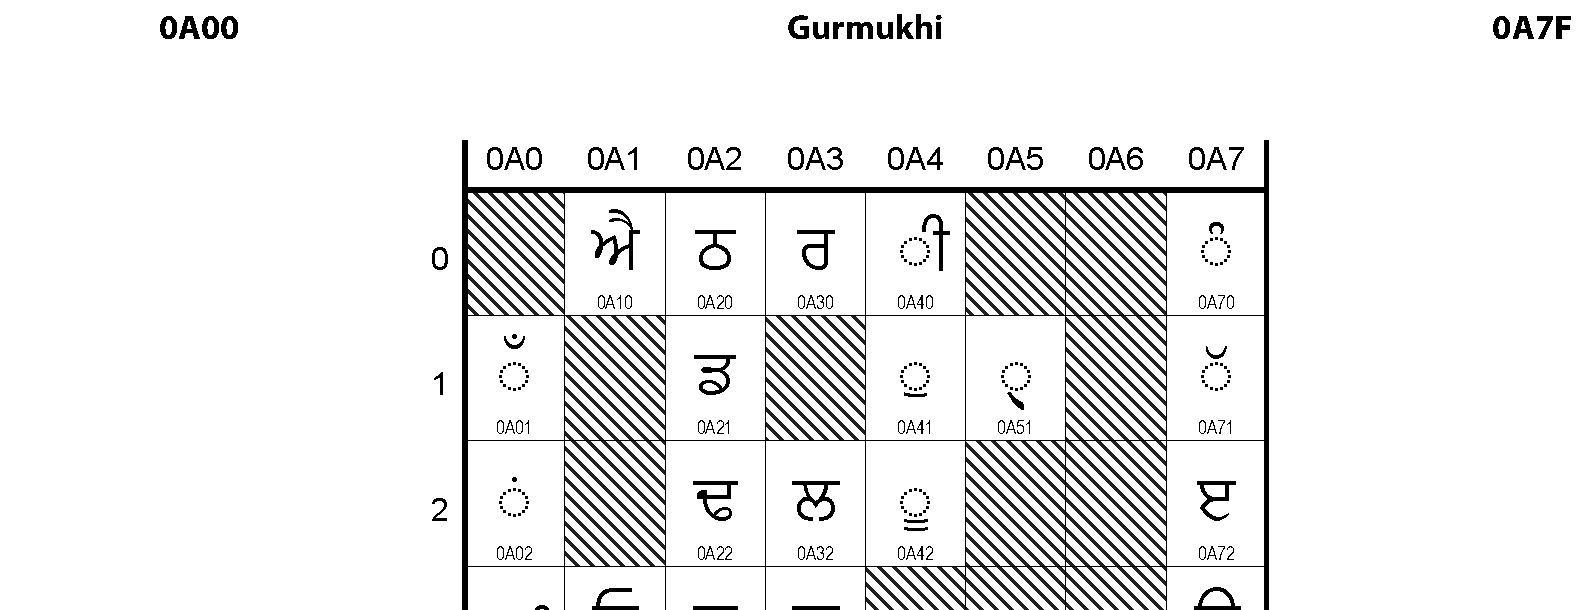 Unicode - Gurmukhi